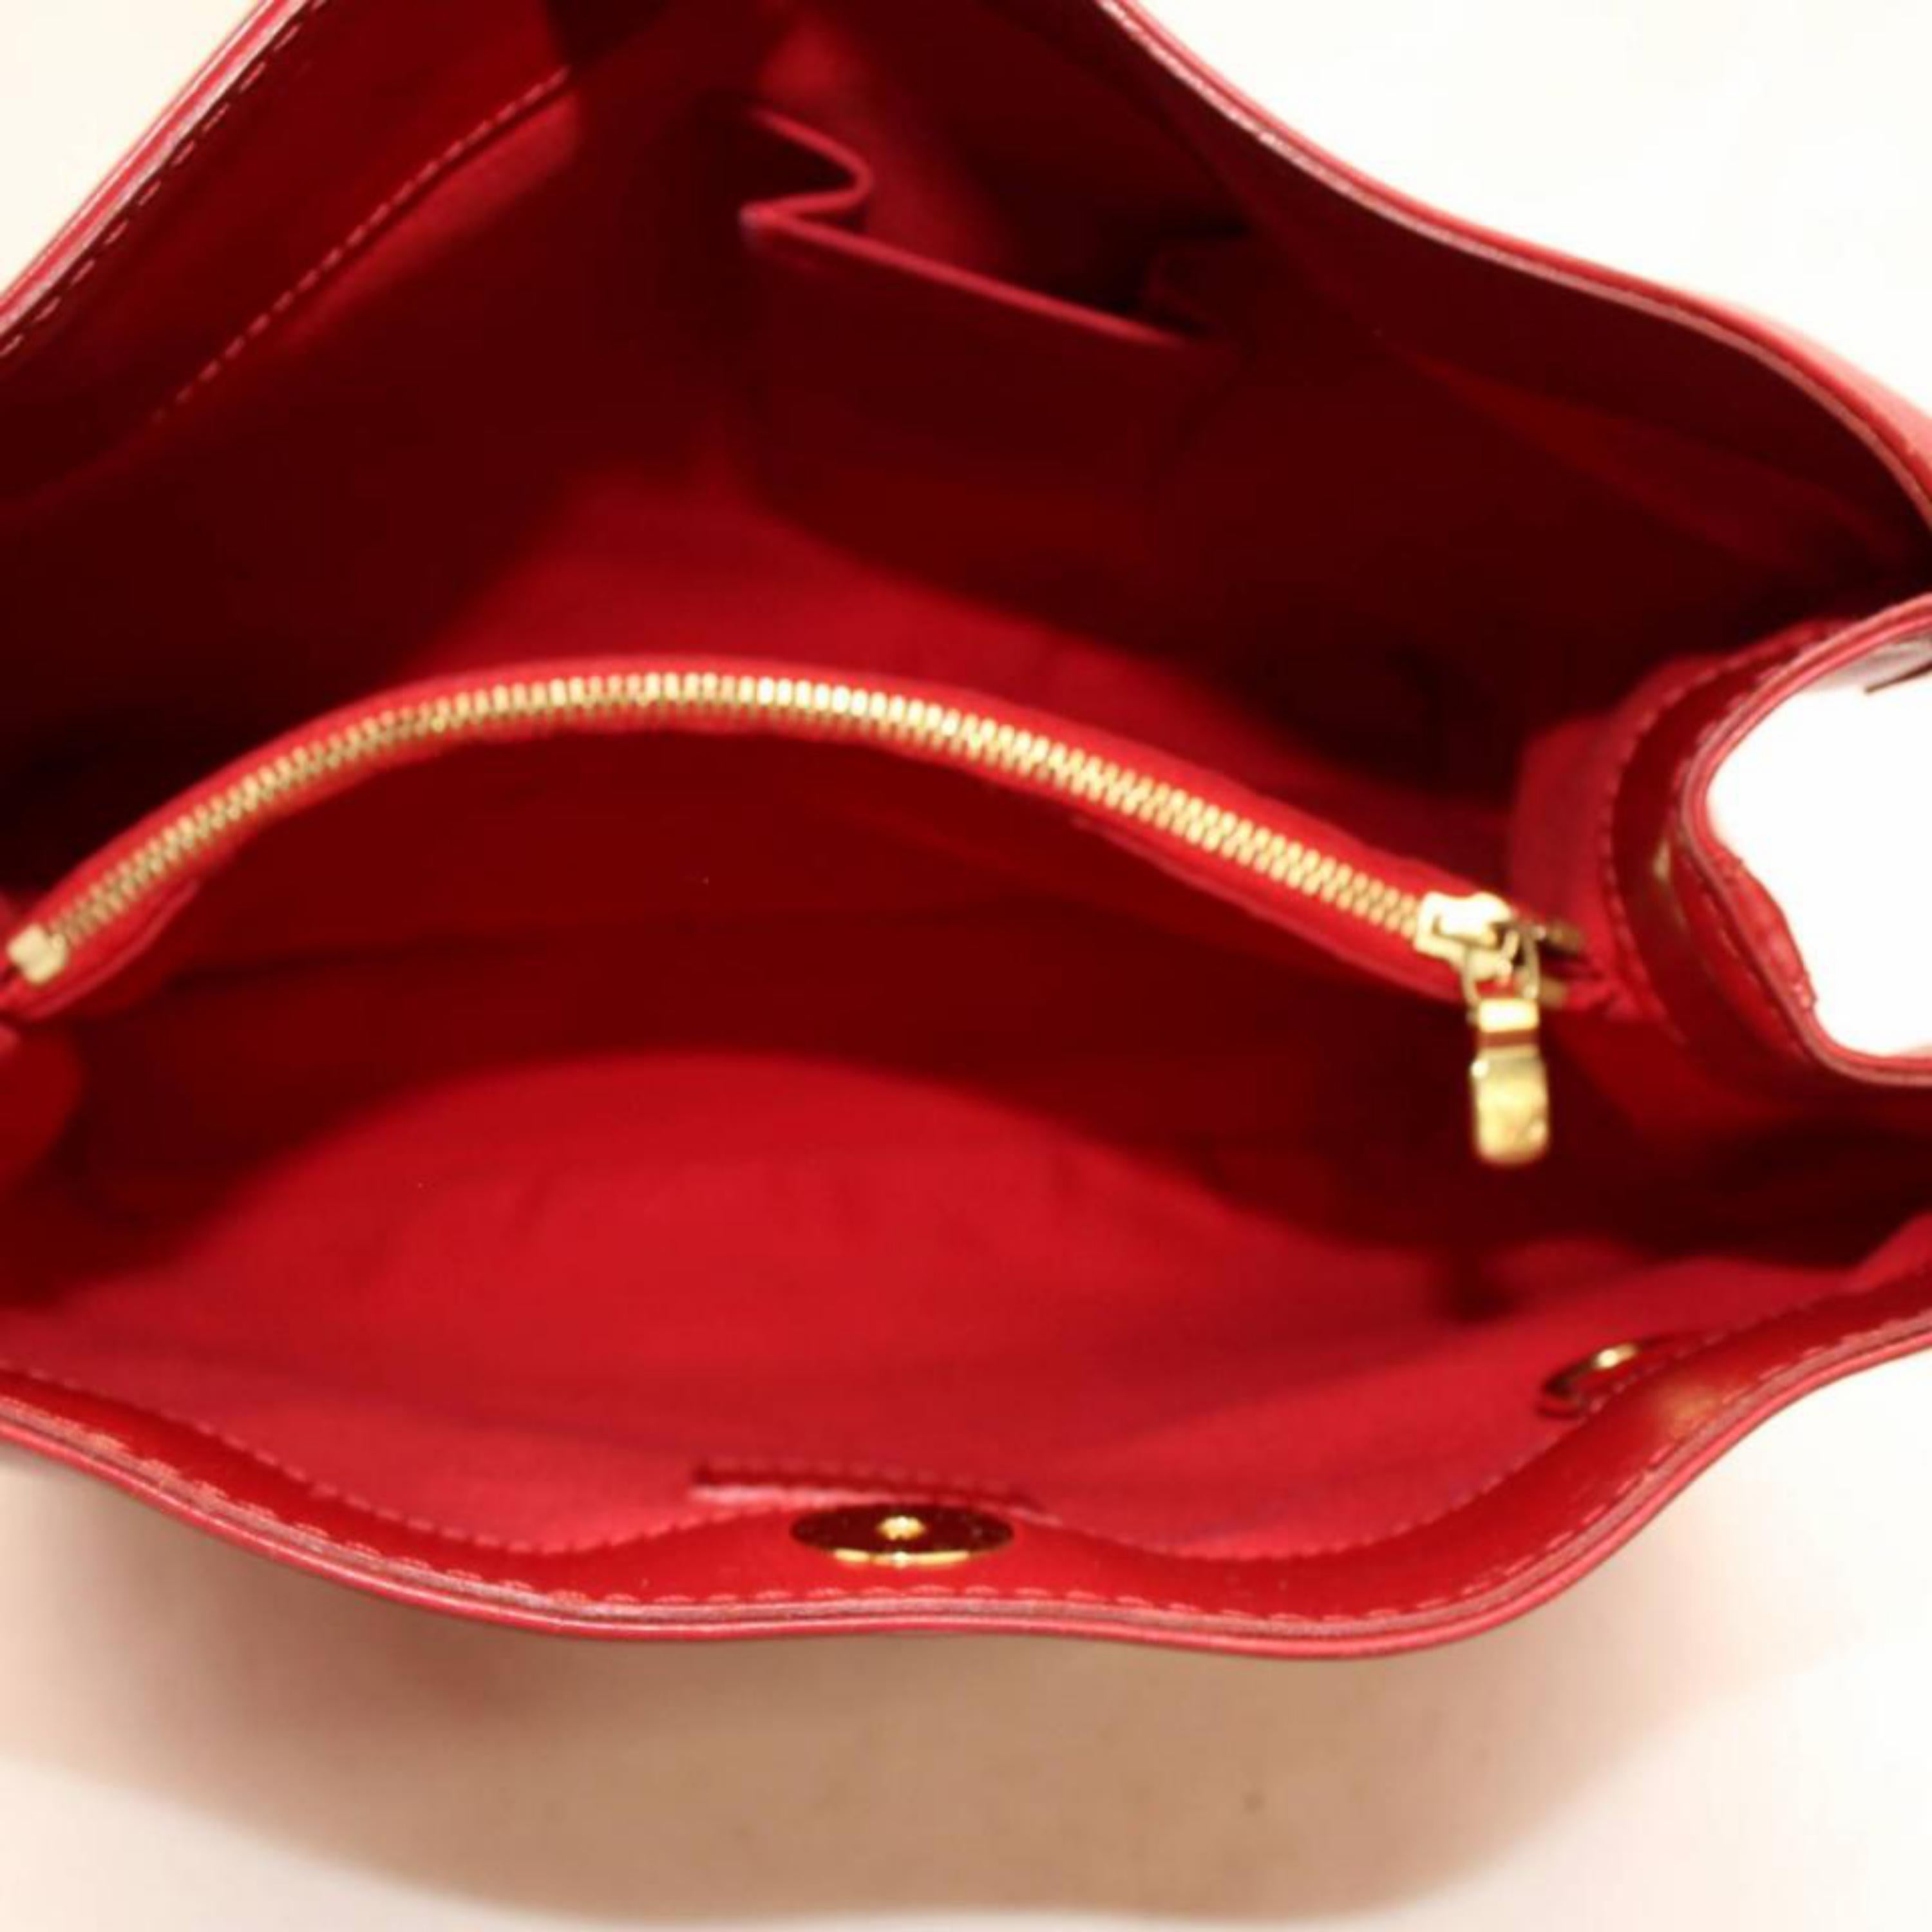 Women's Louis Vuitton Mandara Epi Mm Hobo 868362 Red Leather Shoulder Bag For Sale